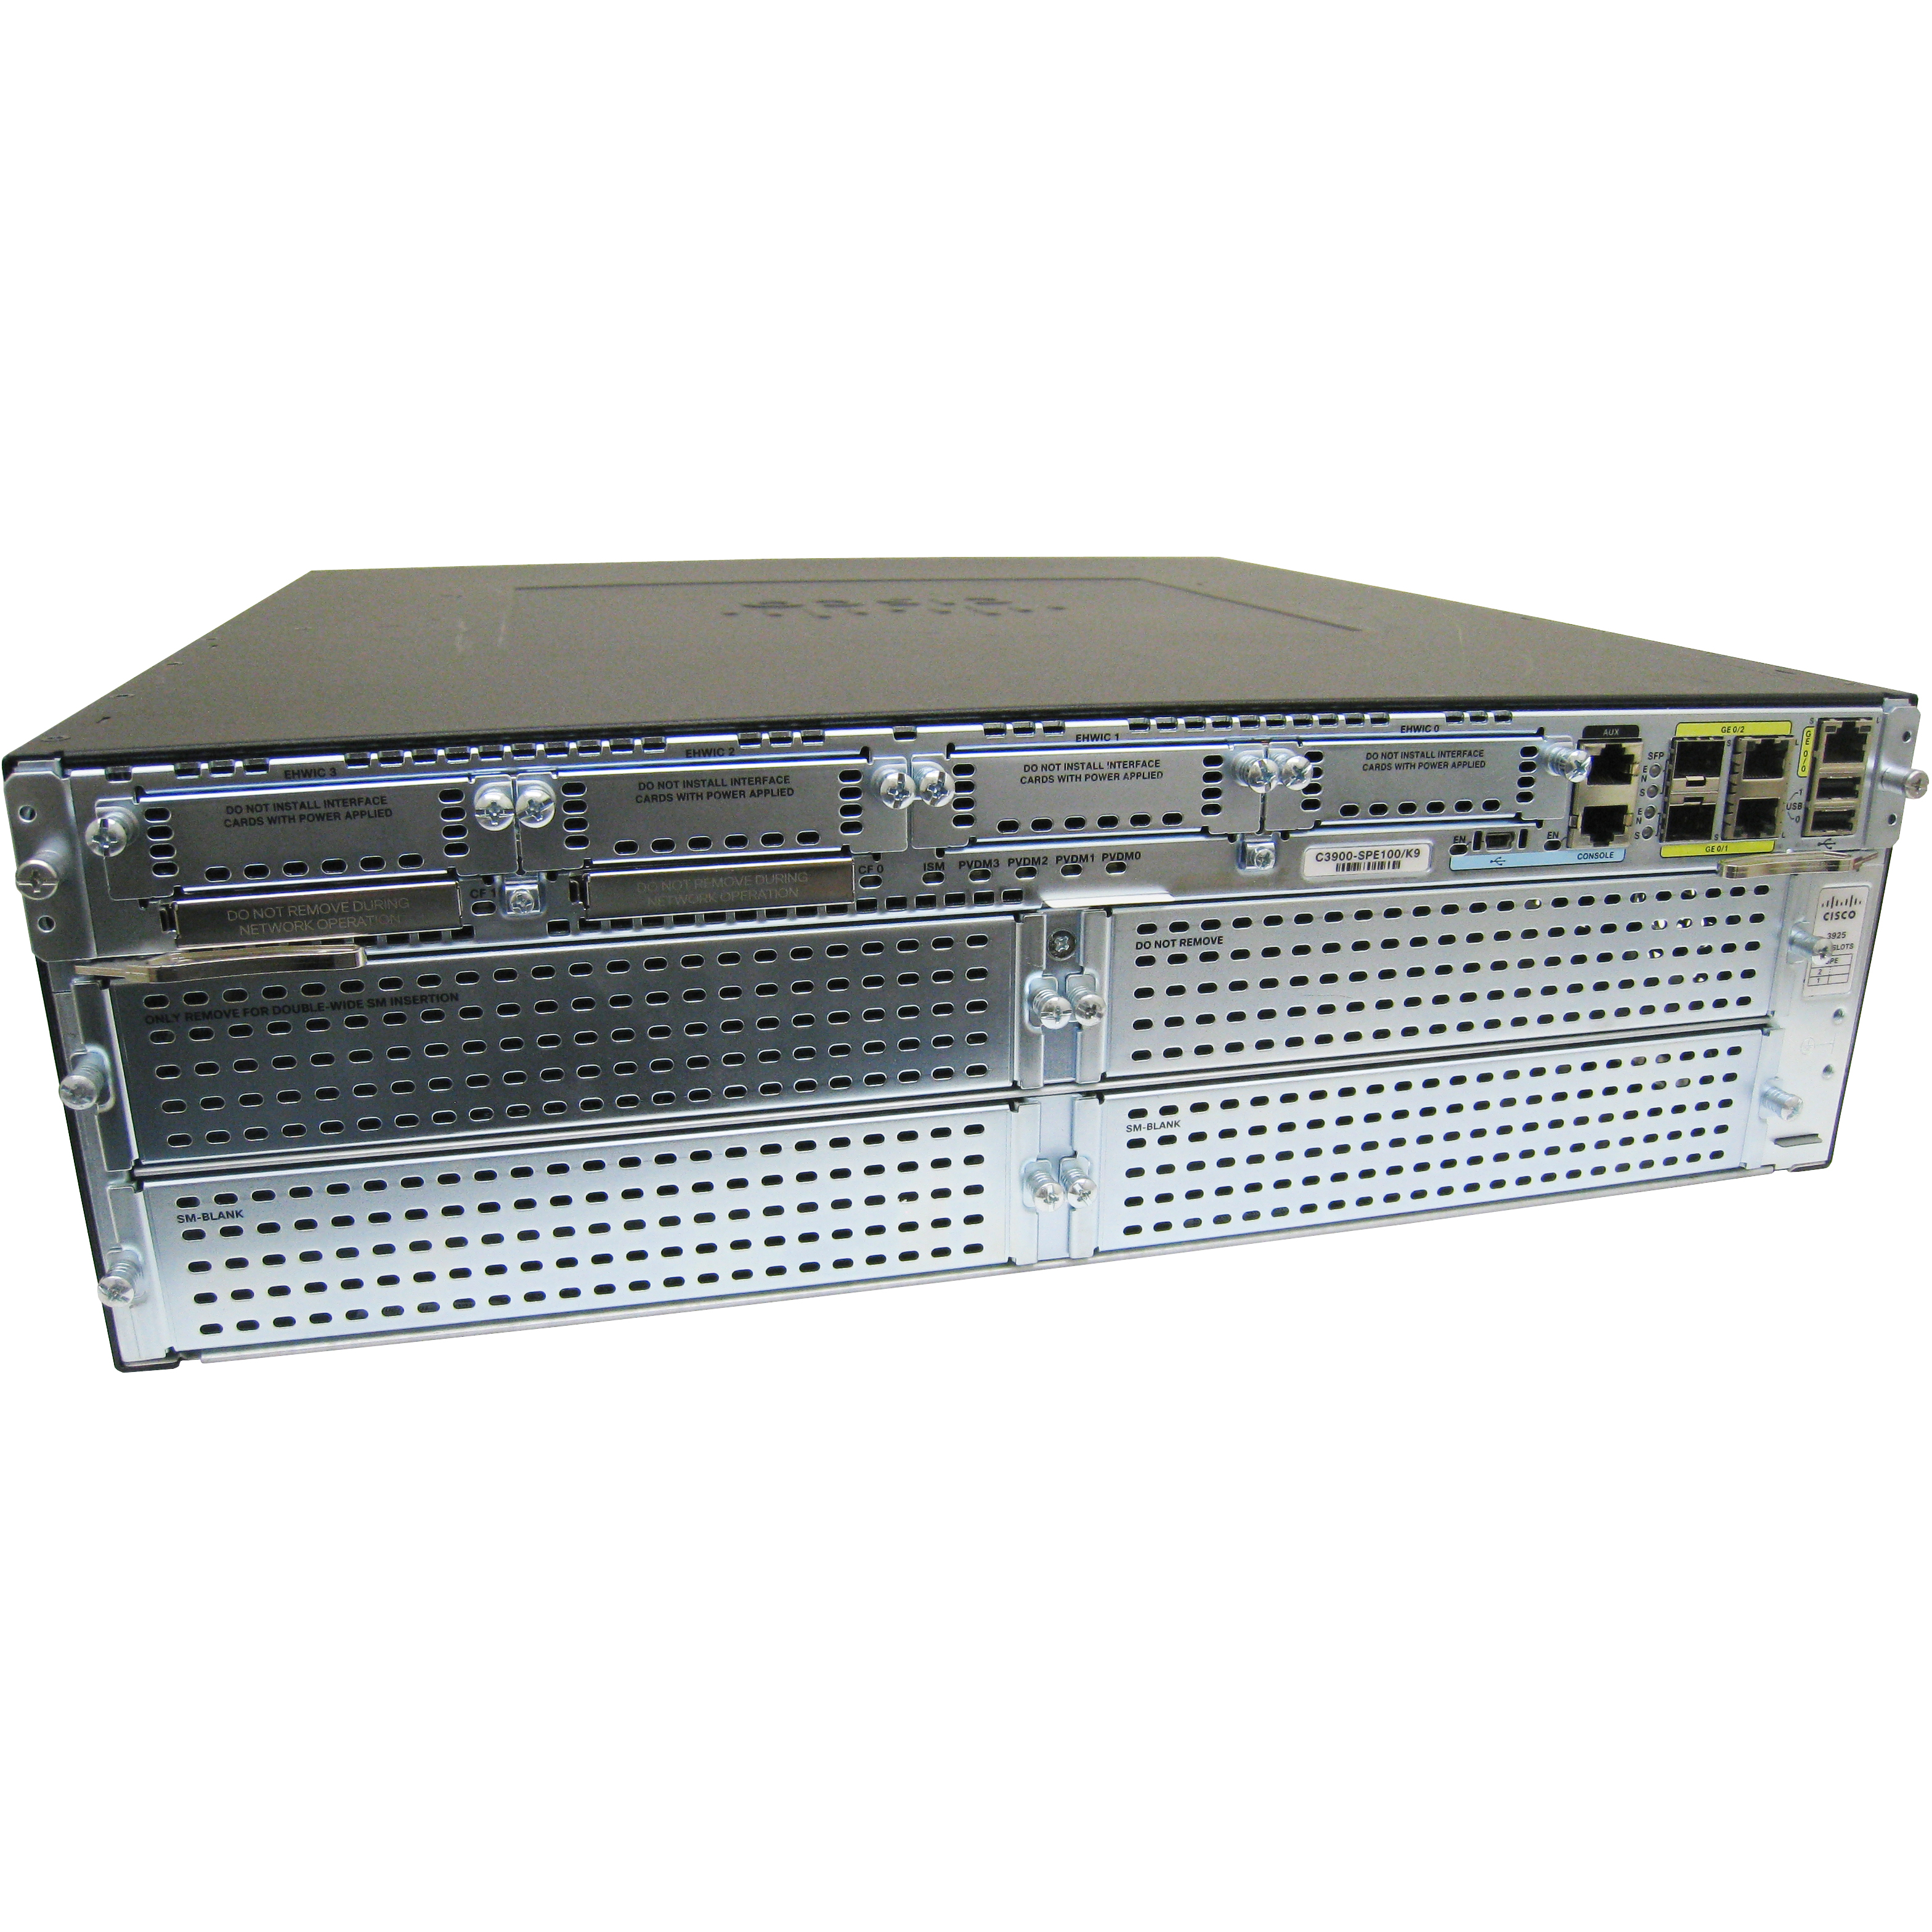 Cisco CISCO3945-V/K9